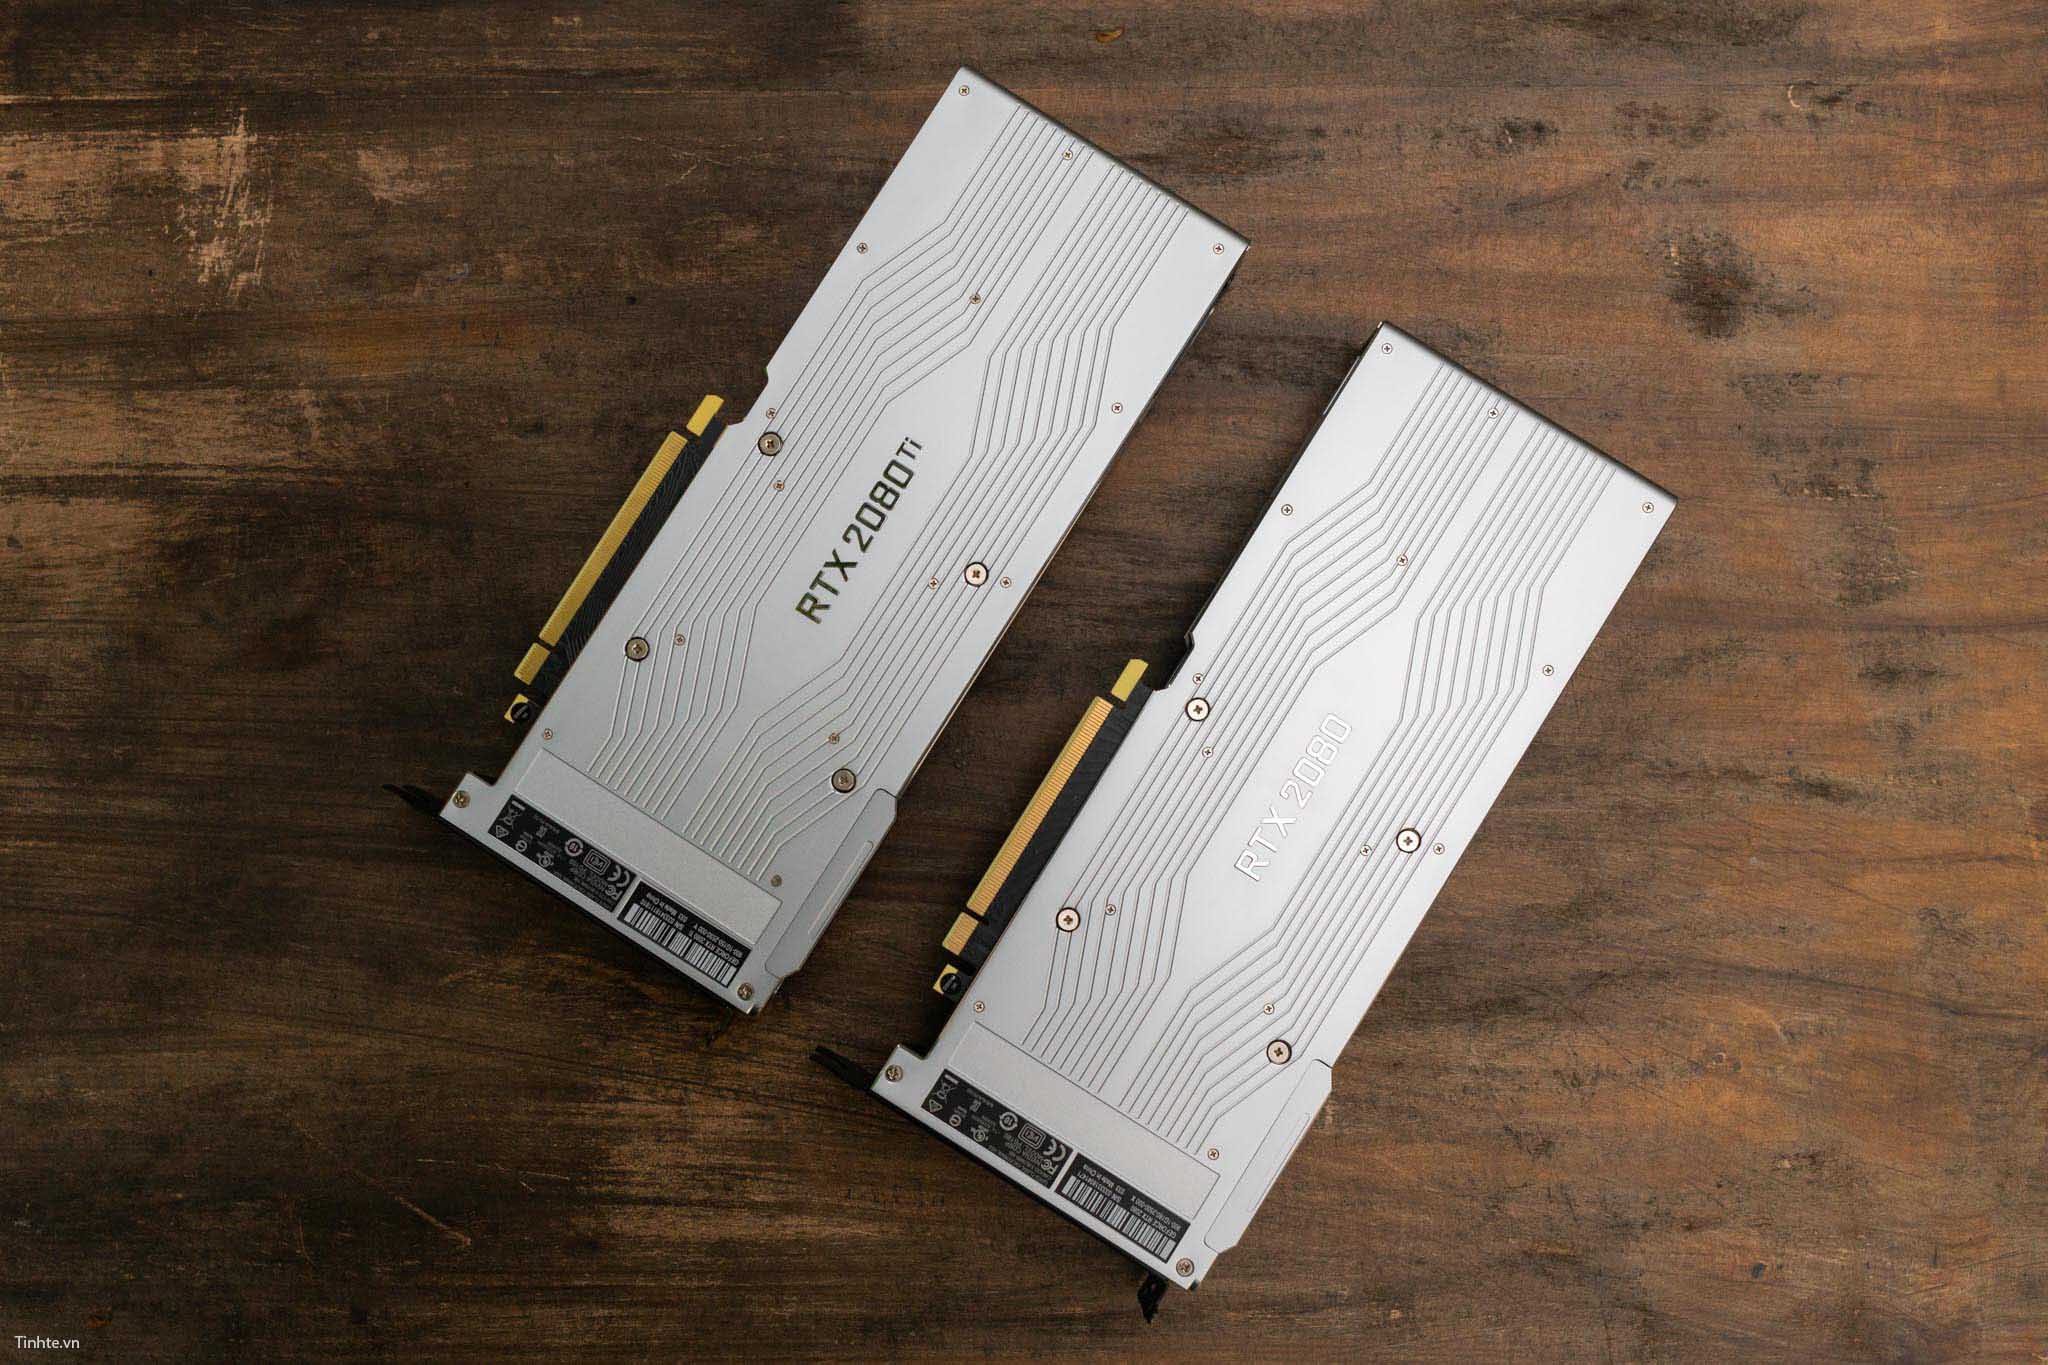 GeForce RTX 2080/2080 Ti Founders Edition: card đồ hoạ hoàn thiện cao cấp như smartphone